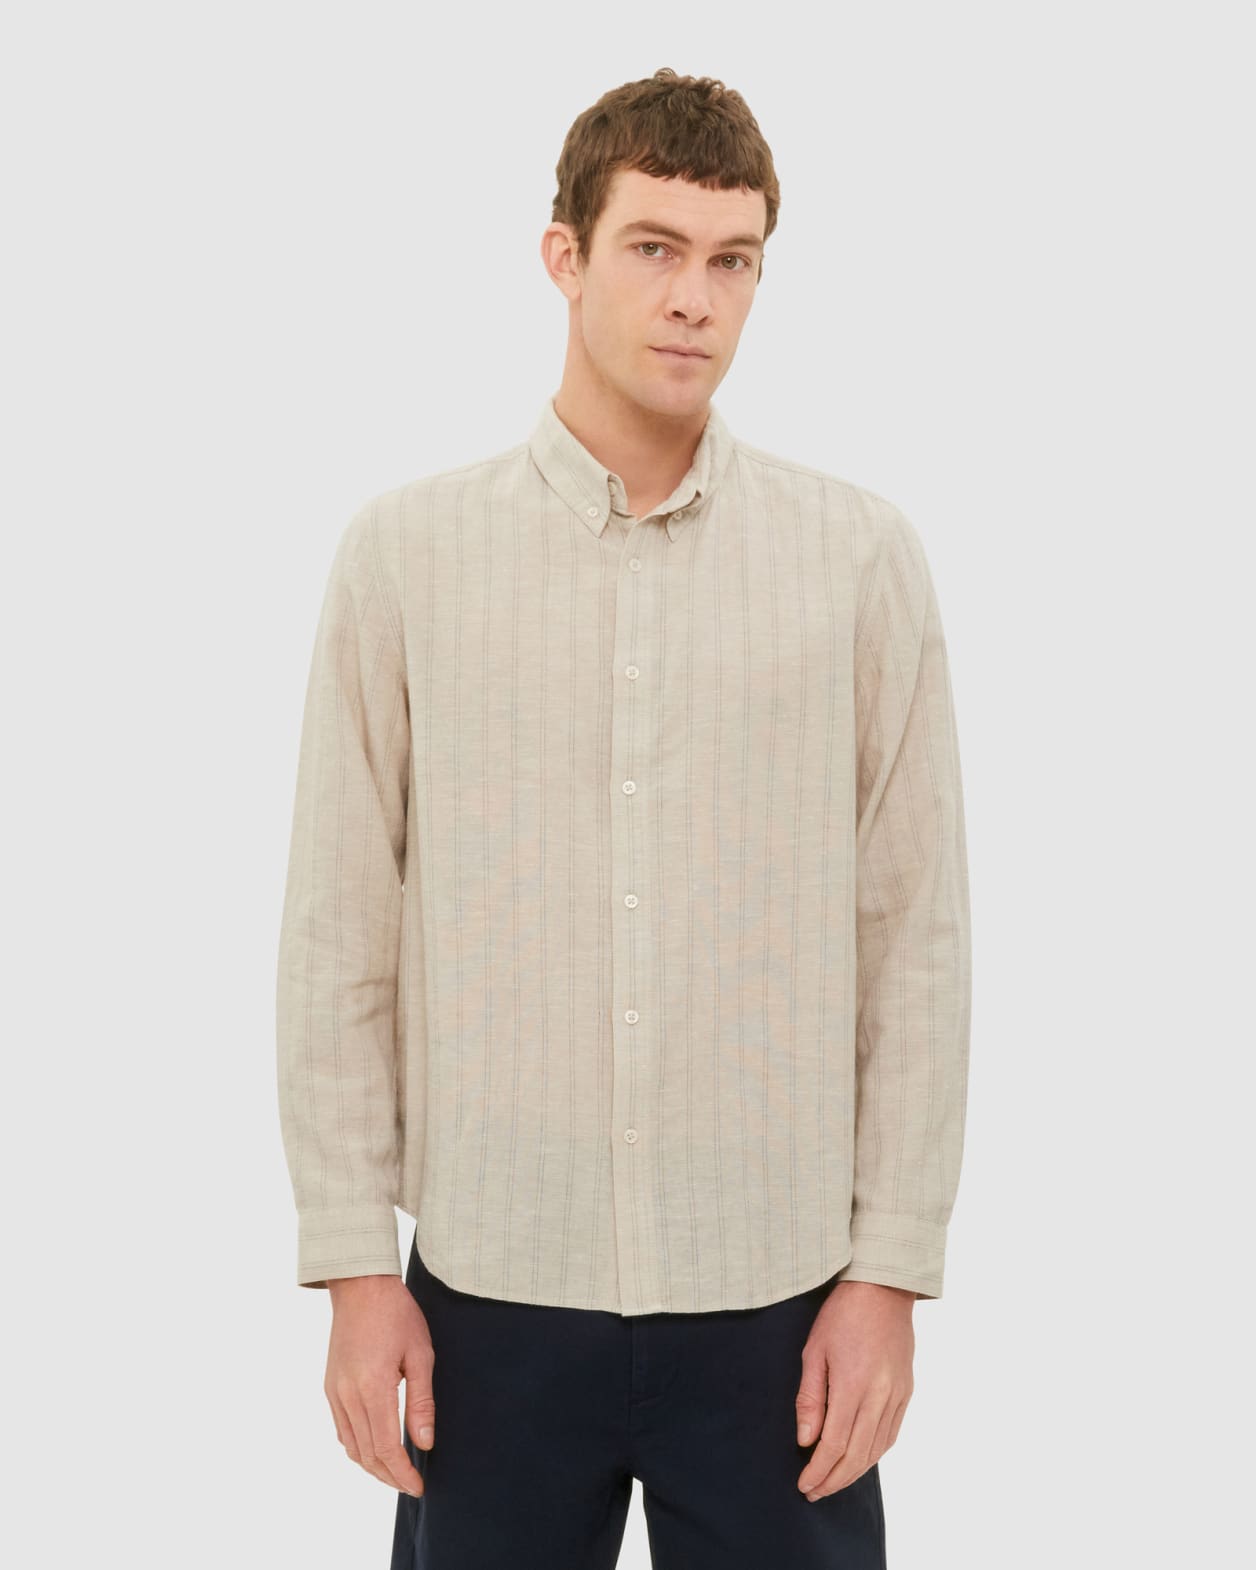 Stripe Lyocell Linen Shirt in Oatmeal/Navy